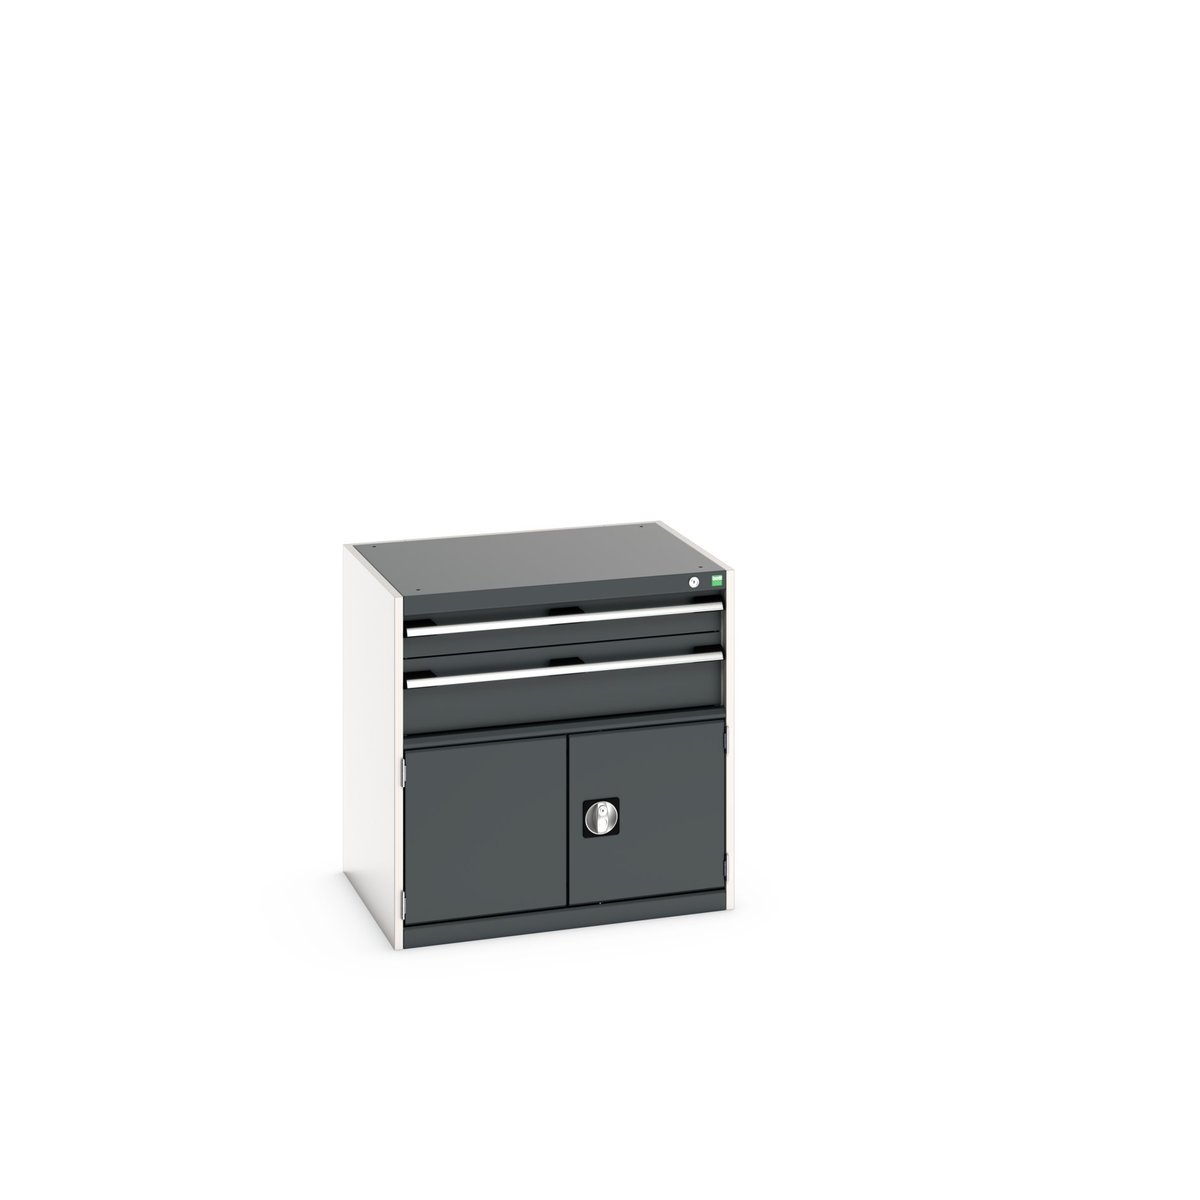 40020021. - cubio drawer-door cabinet